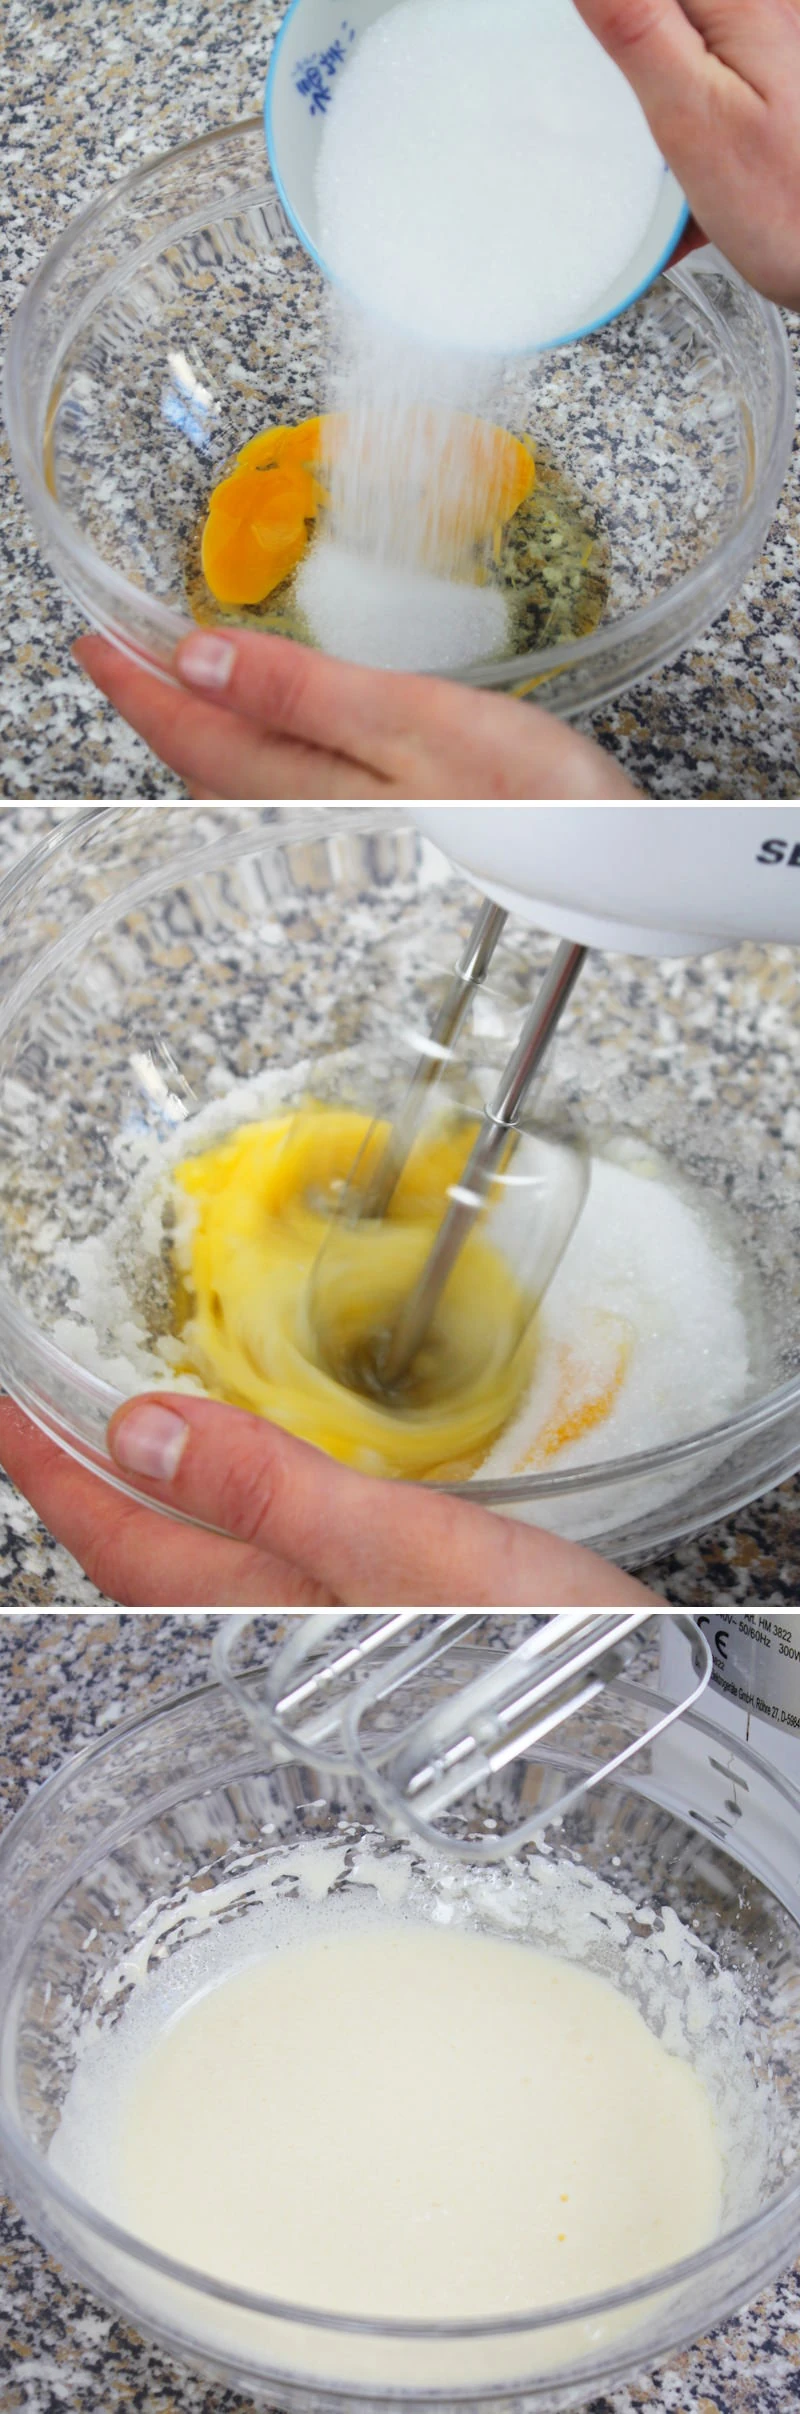 Matcha Muffins Schritt 2 Ei, Zucker und Vanillezucker verrühren